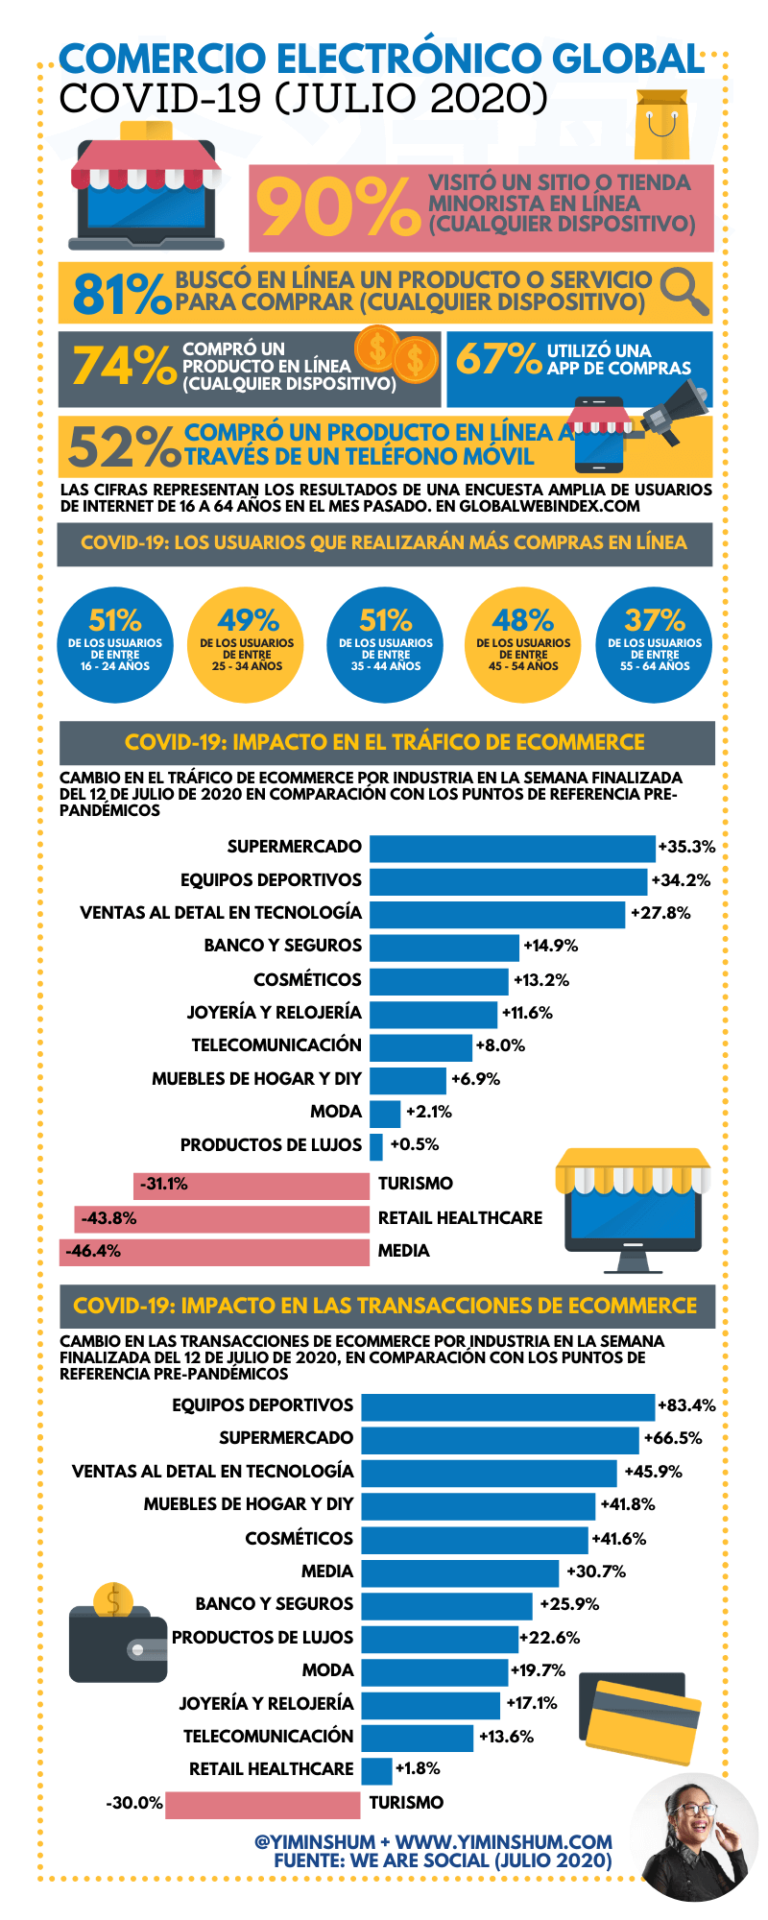 Comercio electrónico global Covid19 2020 #infografia #infographic #ecommerce